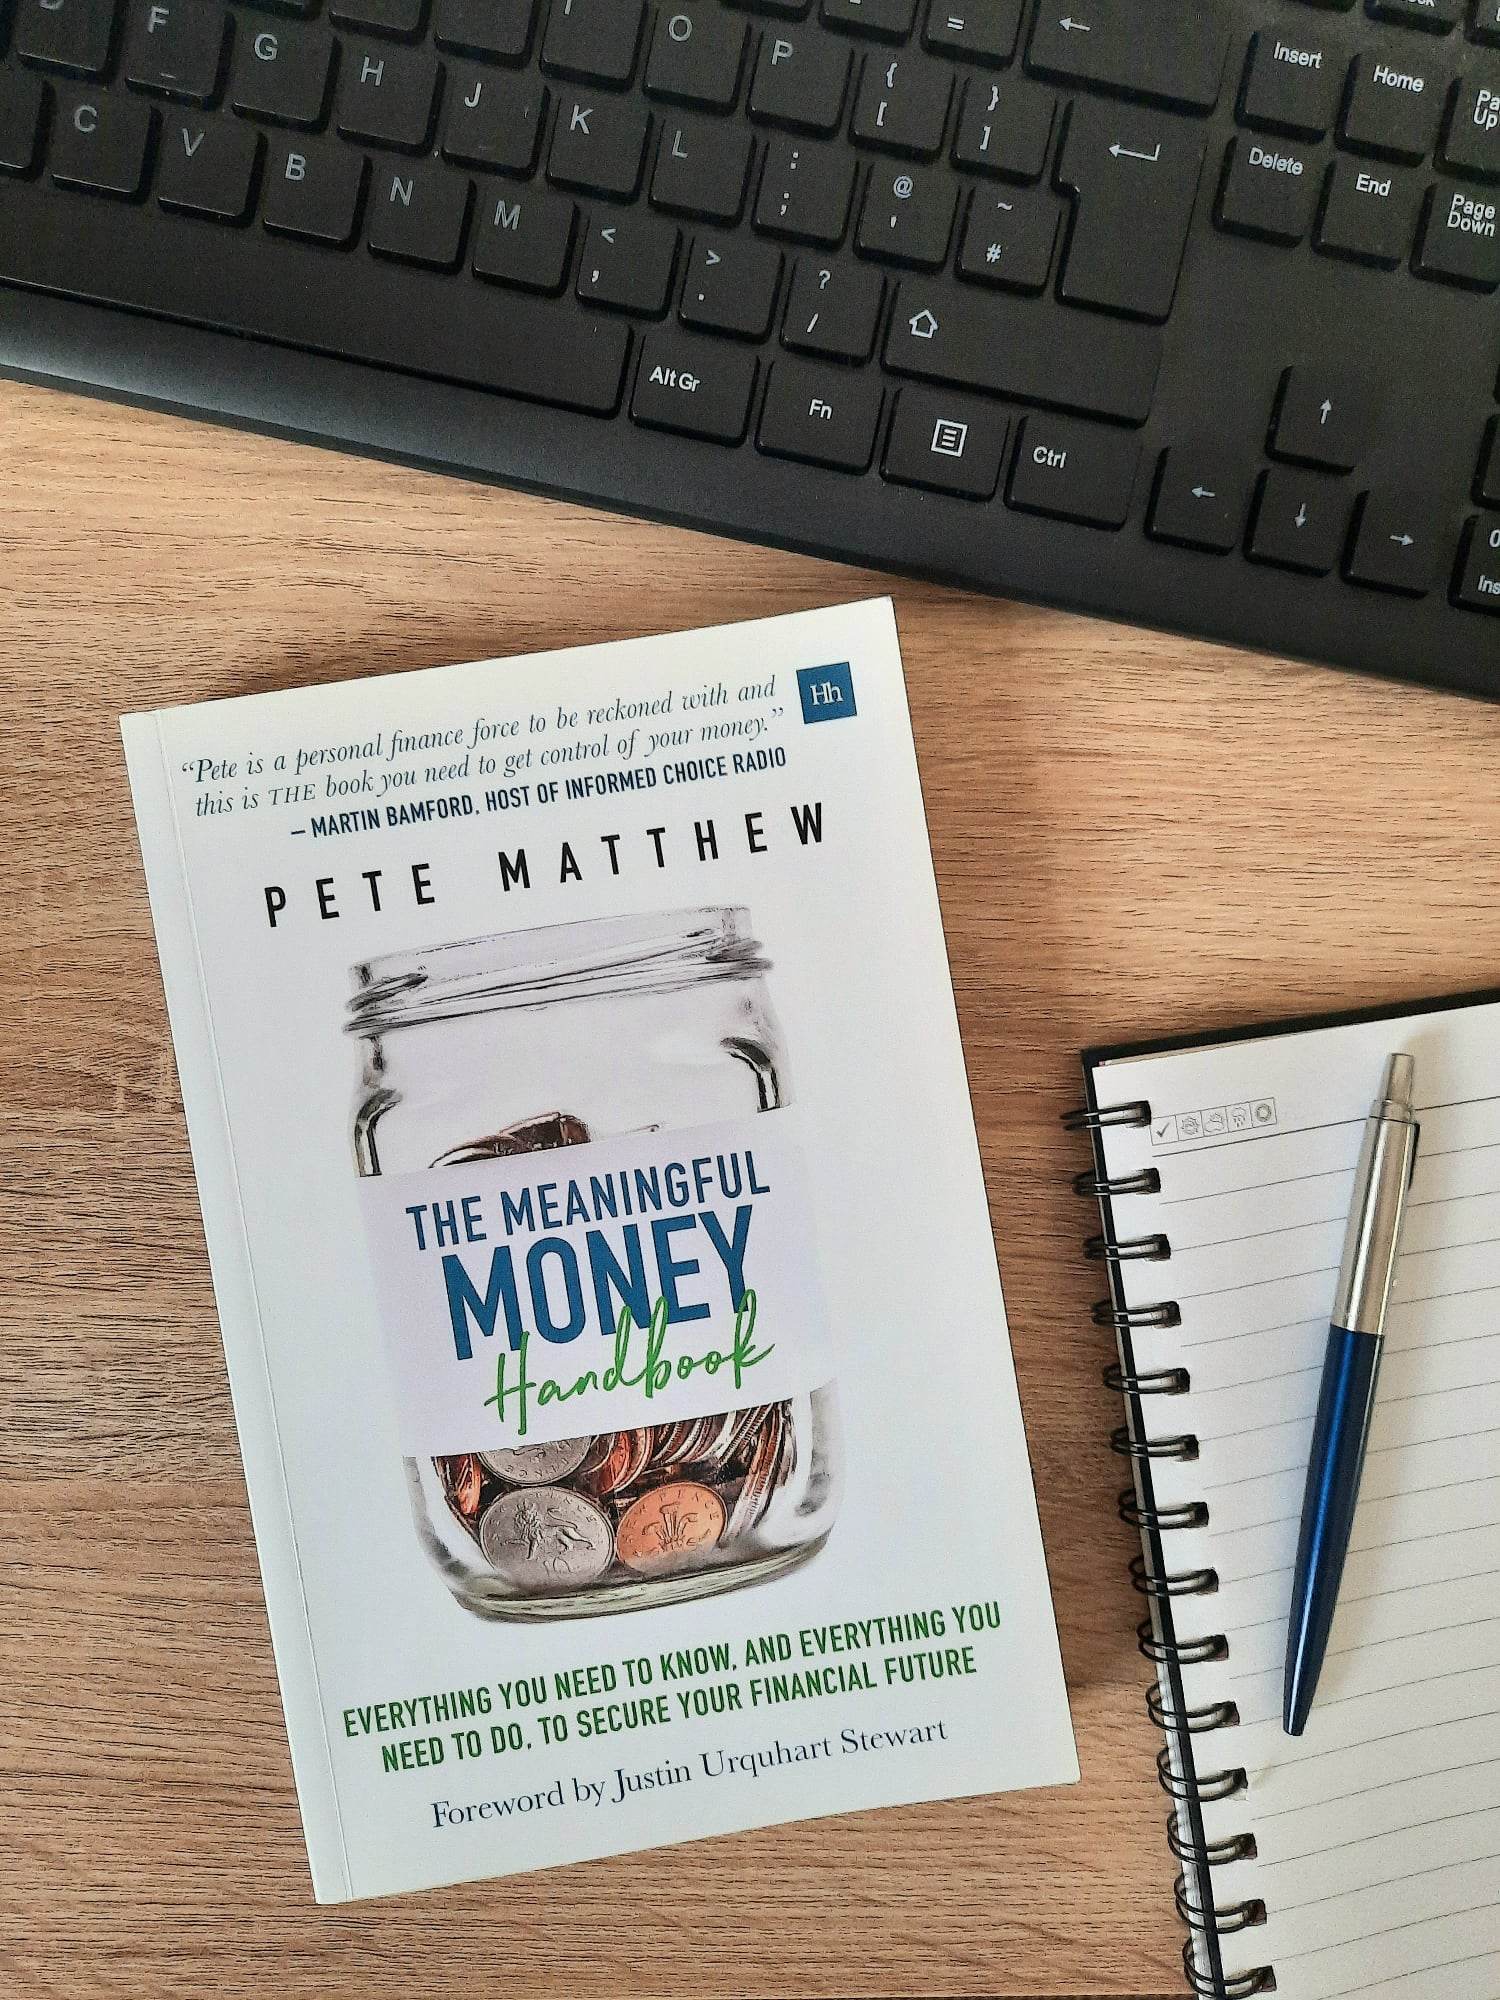 The Meaningful Money Handbook written by Pete Matthew